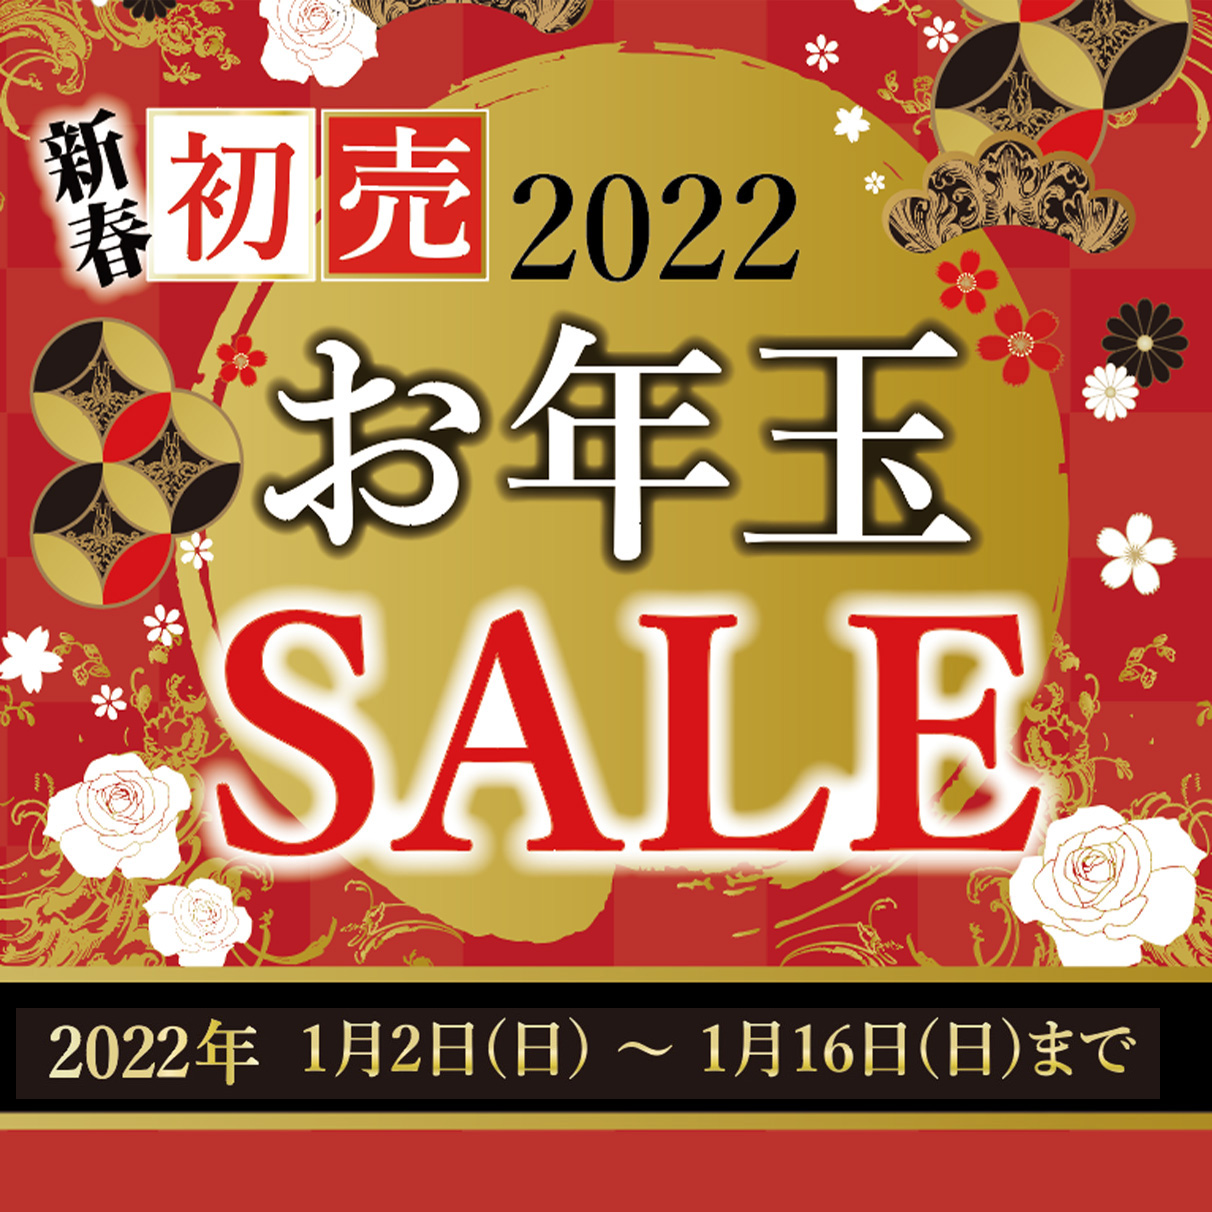 新春！初売りお年玉SALE 2022年1月2日(日)11時販売スタート！　※メゾン・ド・マルシェ各店店頭では 2022年1月2日(日)10時販売スタートとなります。